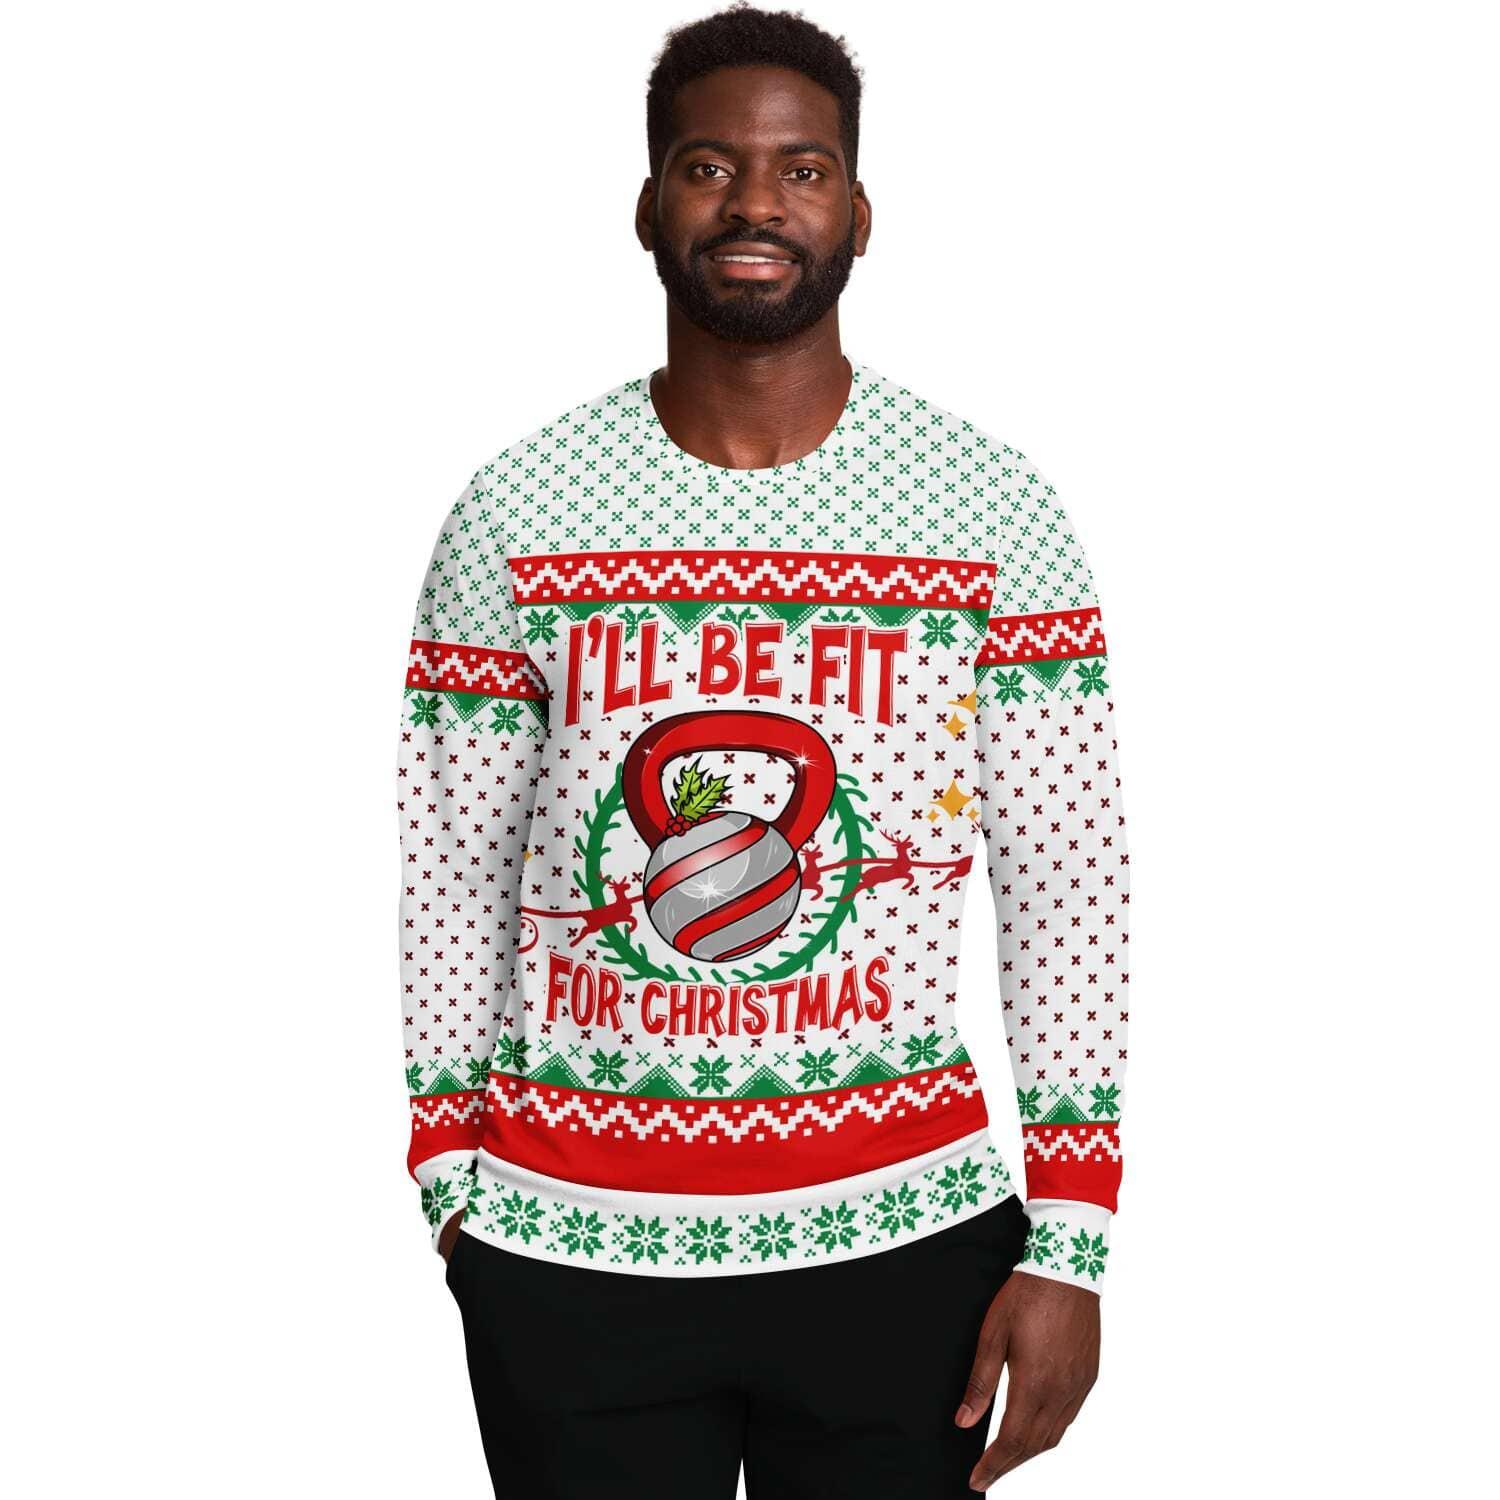 I'll Be fit for Christmas Unisex Ugly Christmas Sweatshirt - TopKoalaTee